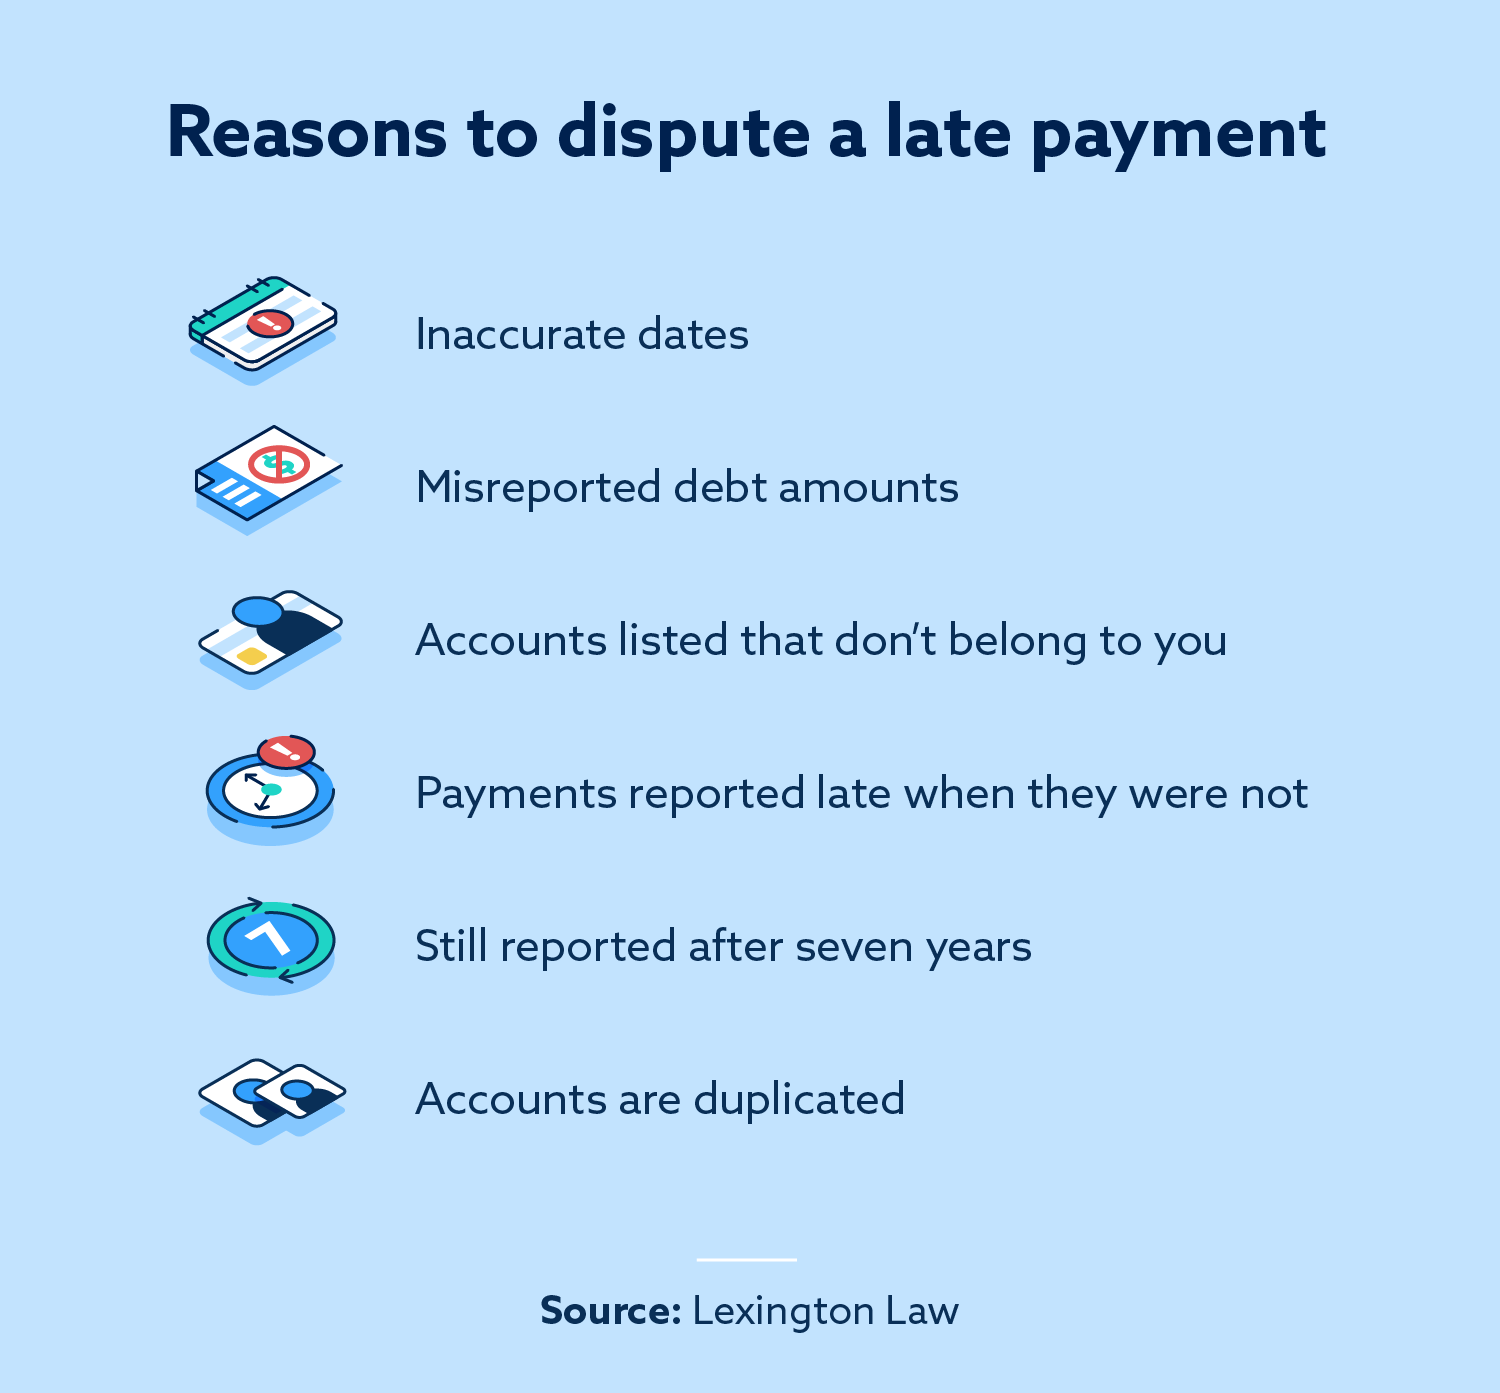 Cât durează pentru a obține o dispută din raportul dvs. de credit?